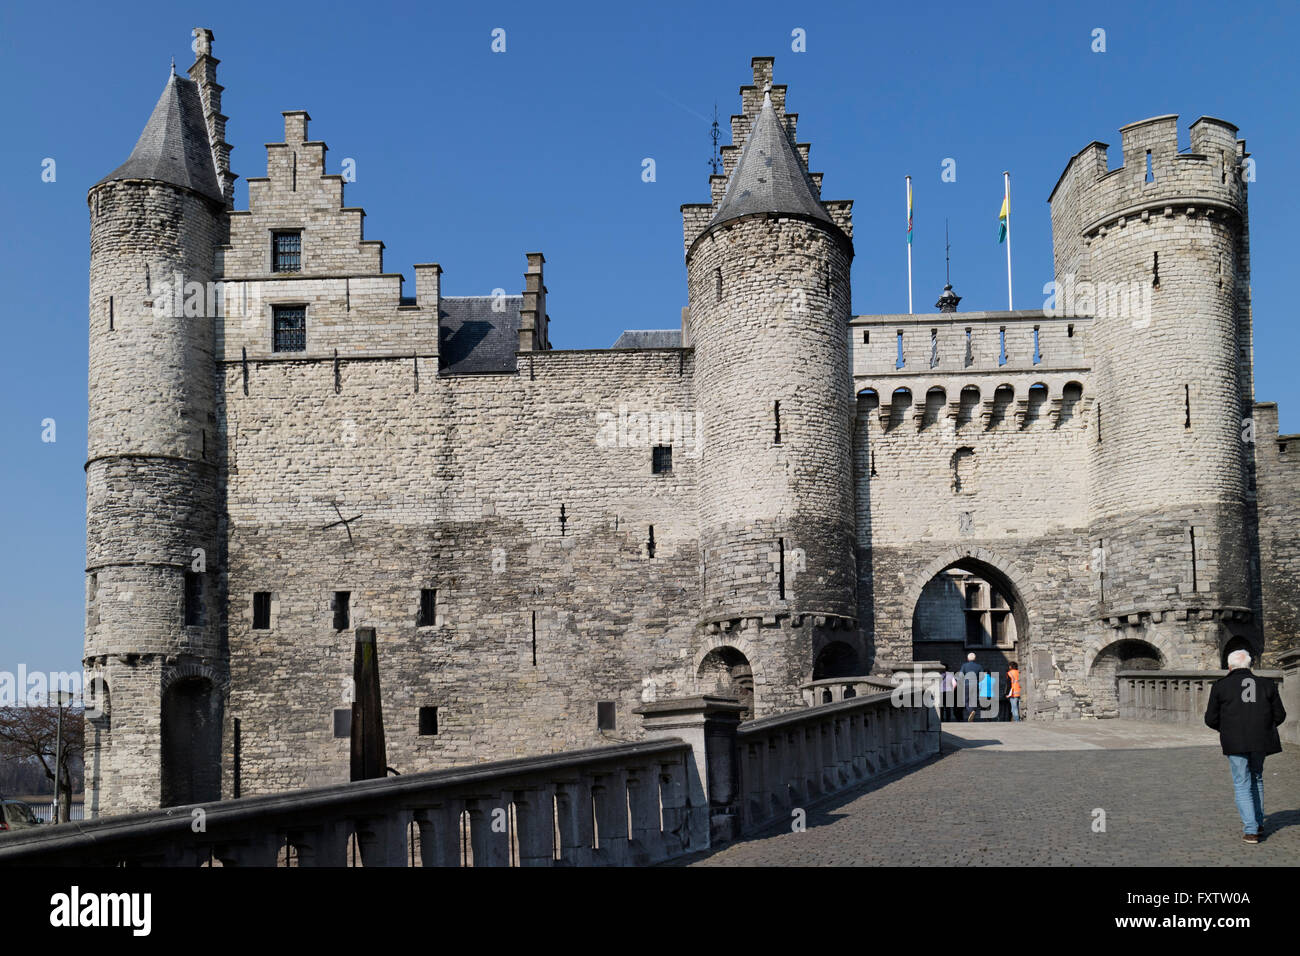 Puerta de entrada al castillo de Steen a orillas del río Escalda en Antwerp, Bélgica. Foto de stock